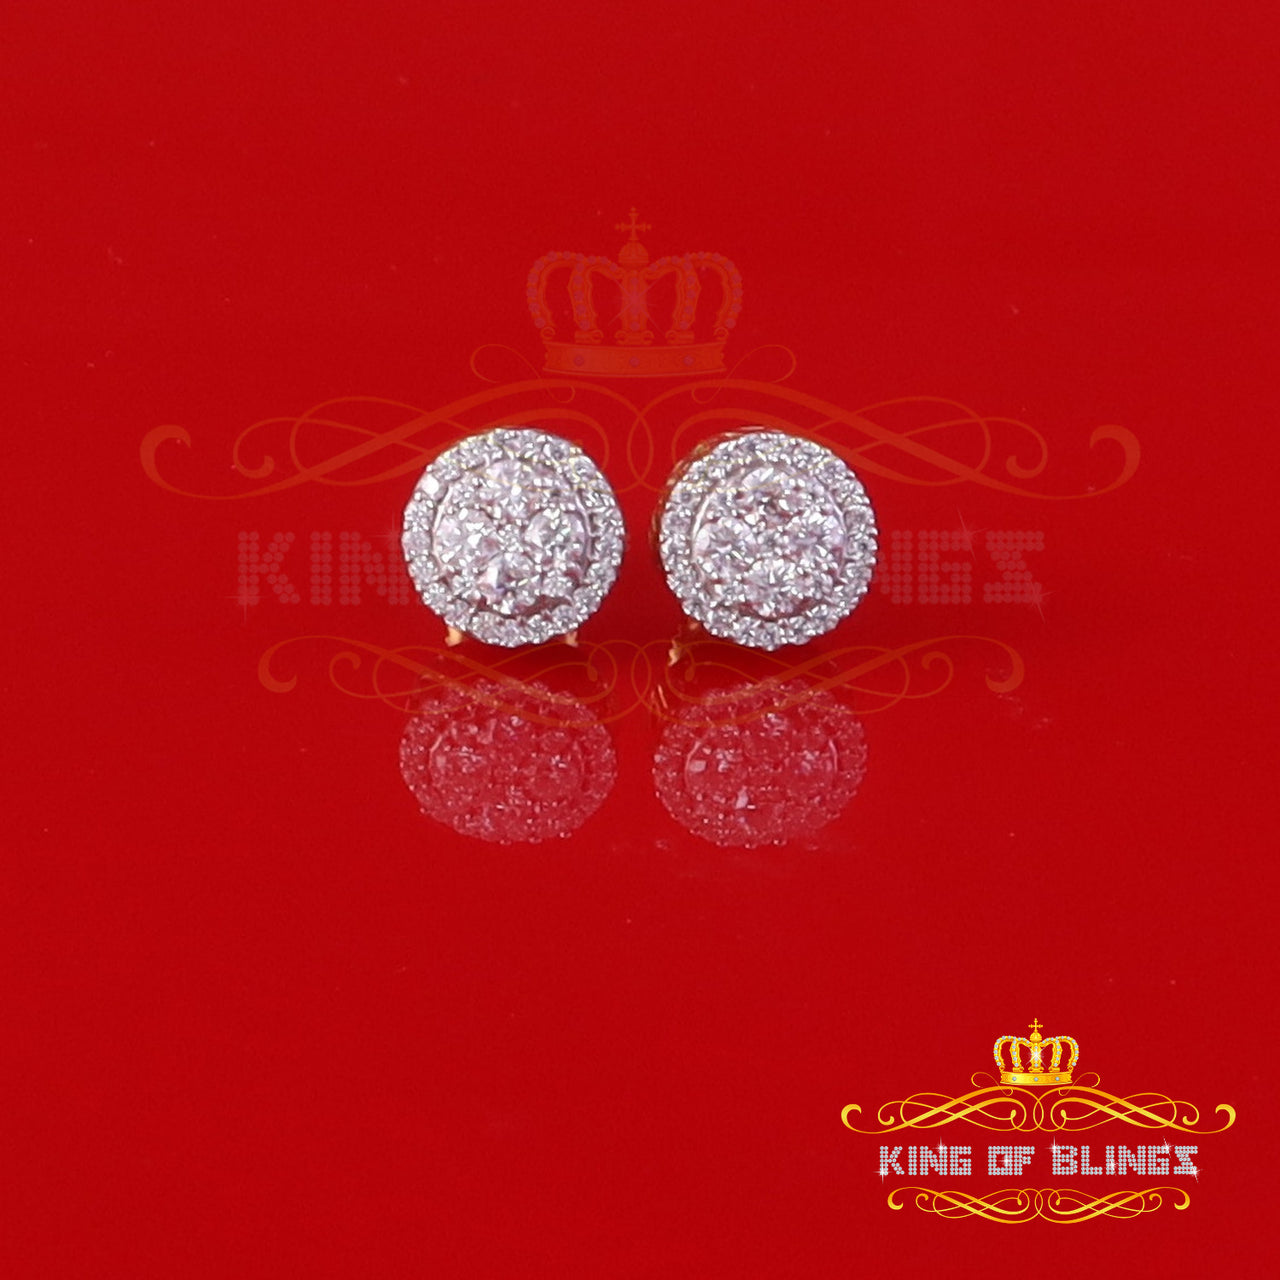 King of Bling's Men's/Womens Silver Yellow 0.50ct VVS 'D' Moissanite Round Stud Earrings KING OF BLINGS